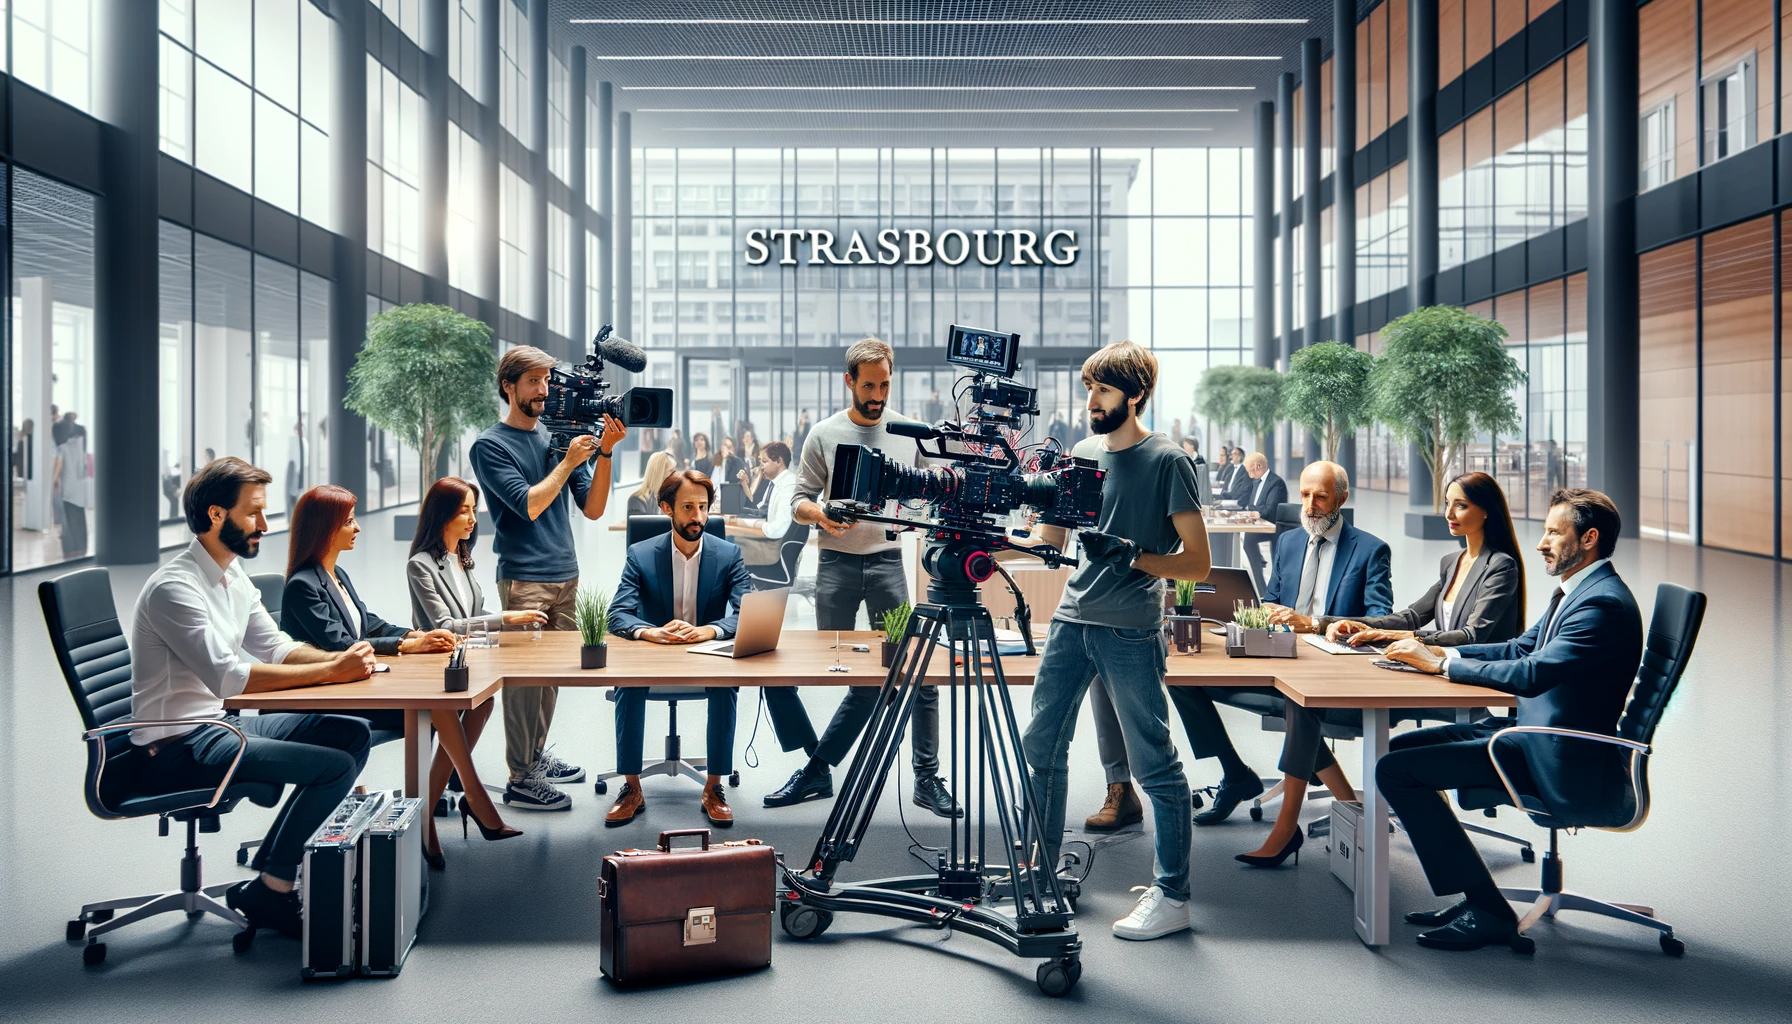 quipe de Production en Action : Une scène montrant une équipe professionnelle de Suprahead Studio travaillant sur un film institutionnel à Strasbourg, dans un environnement d'entreprise.